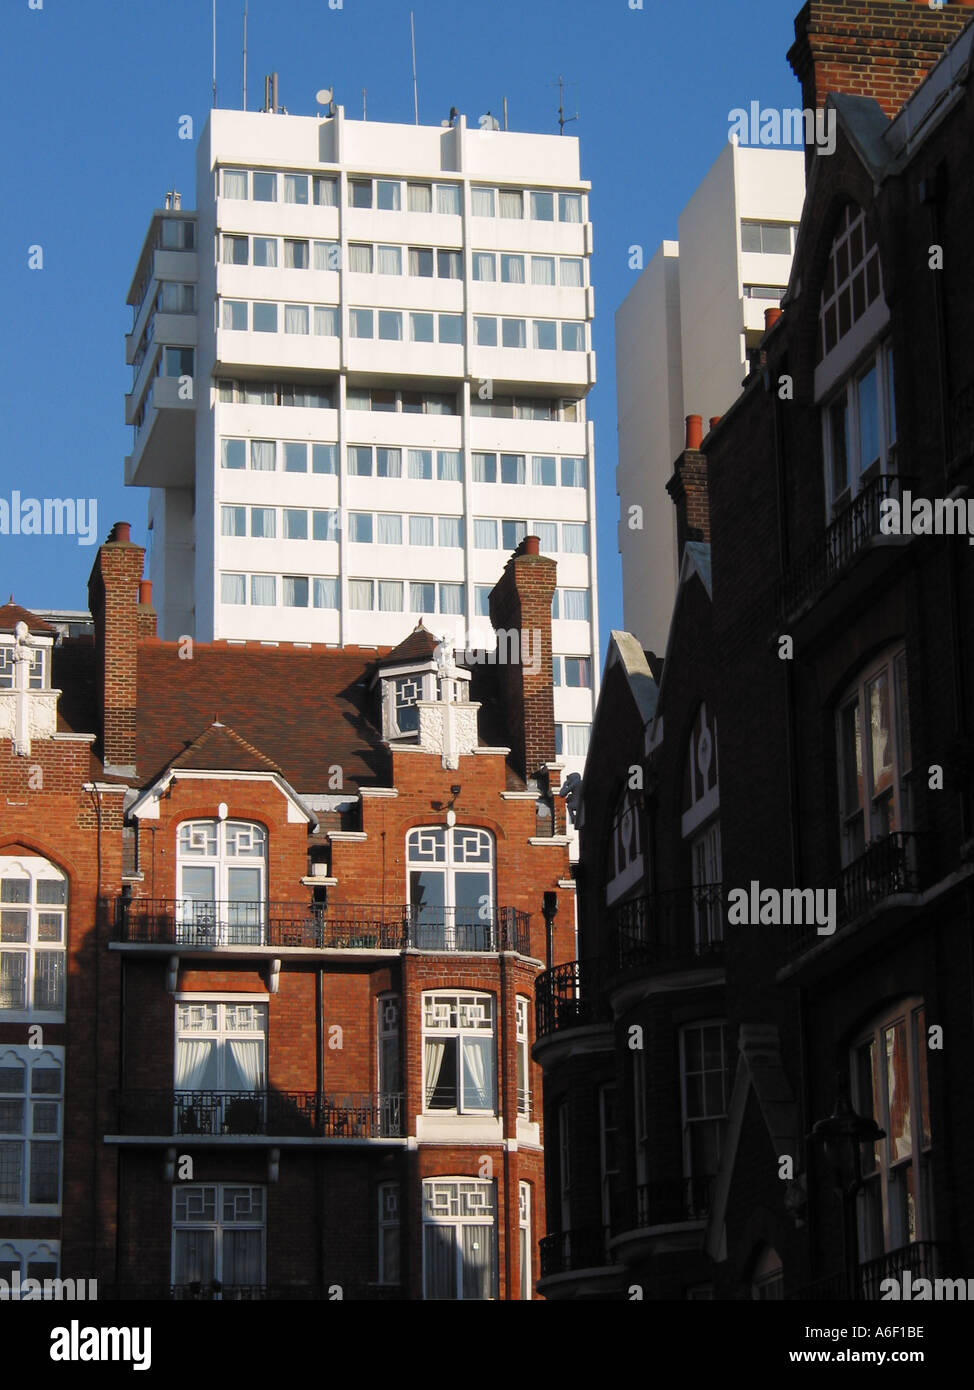 L'architecture typique de Marylebone Londres Angleterre Grande-Bretagne Banque D'Images